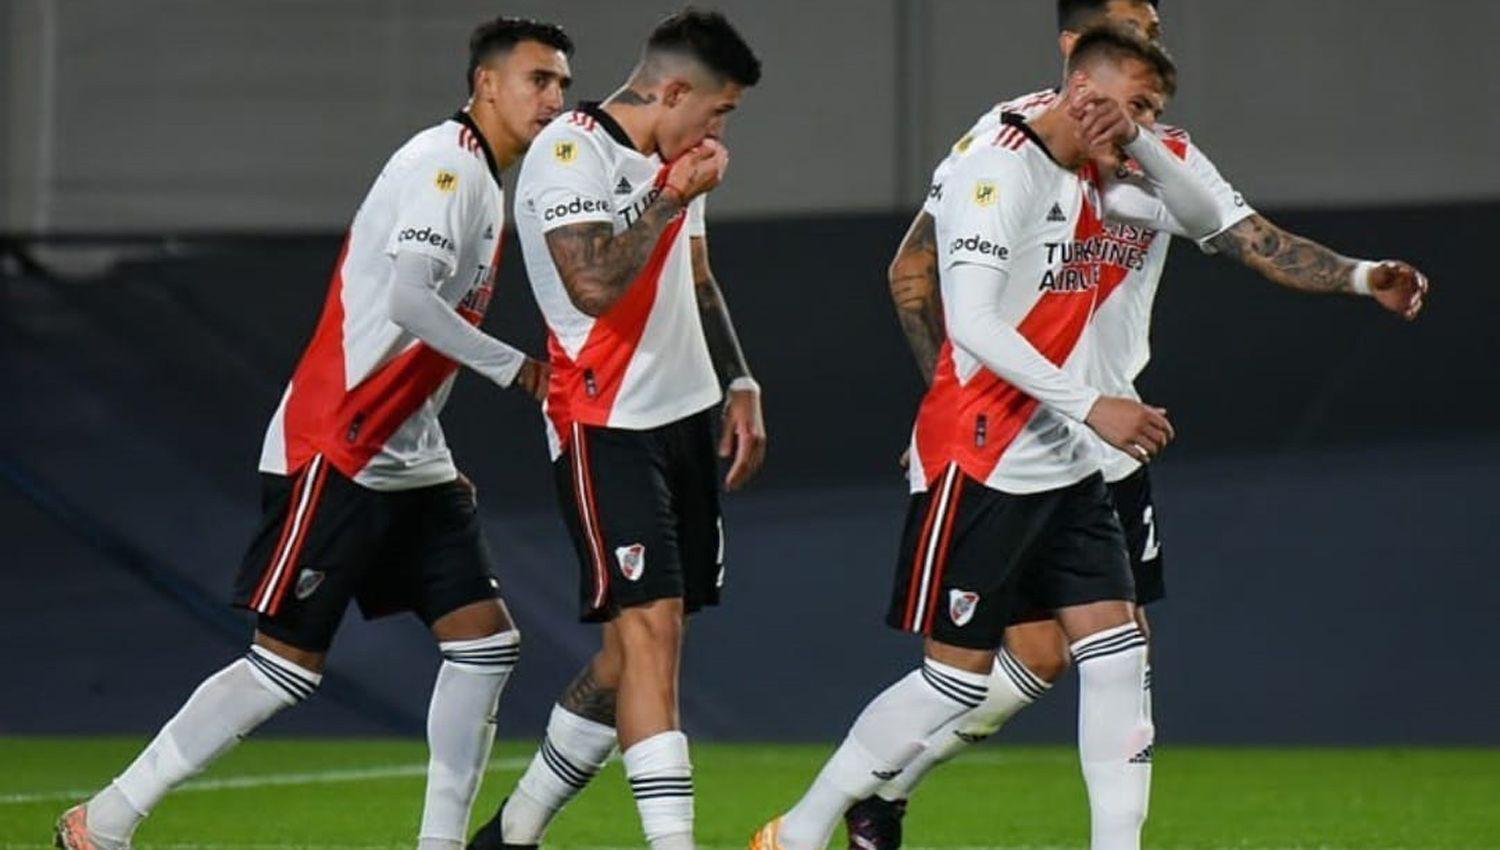 River hundioacute a Veacutelez en el fondo y ahora piensa en la Copa Libertadores